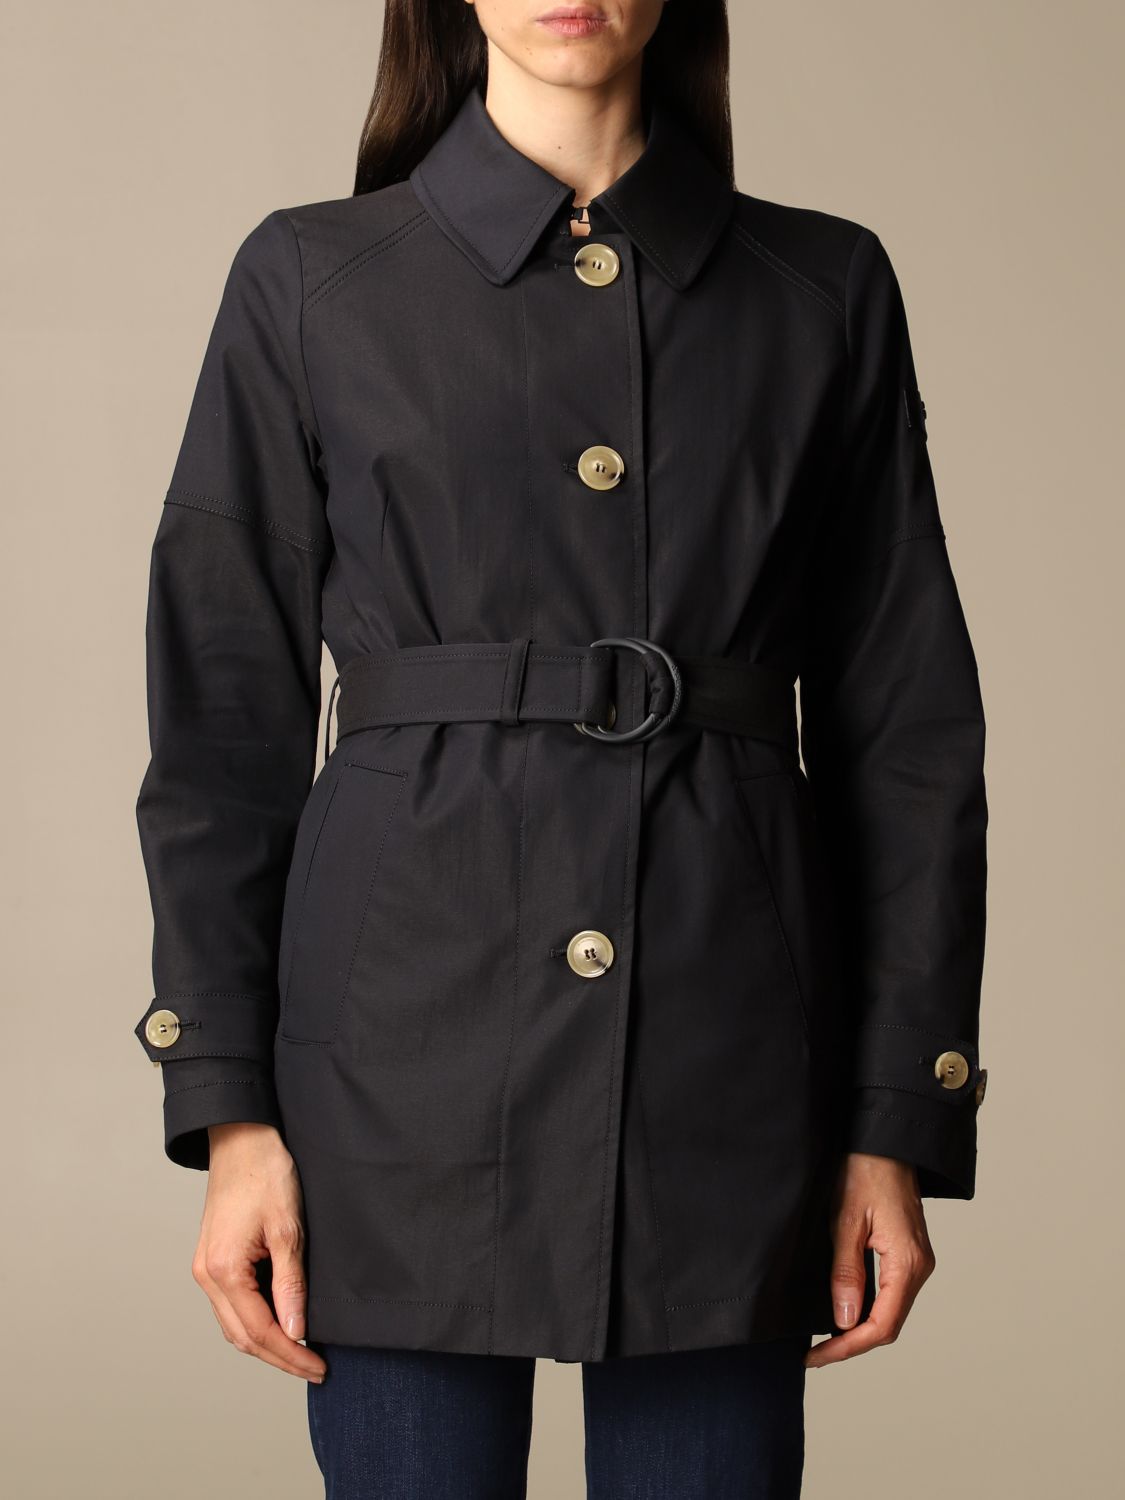 Peuterey Outlet: Trench coat women | Trench Coat Peuterey Women Beige ...